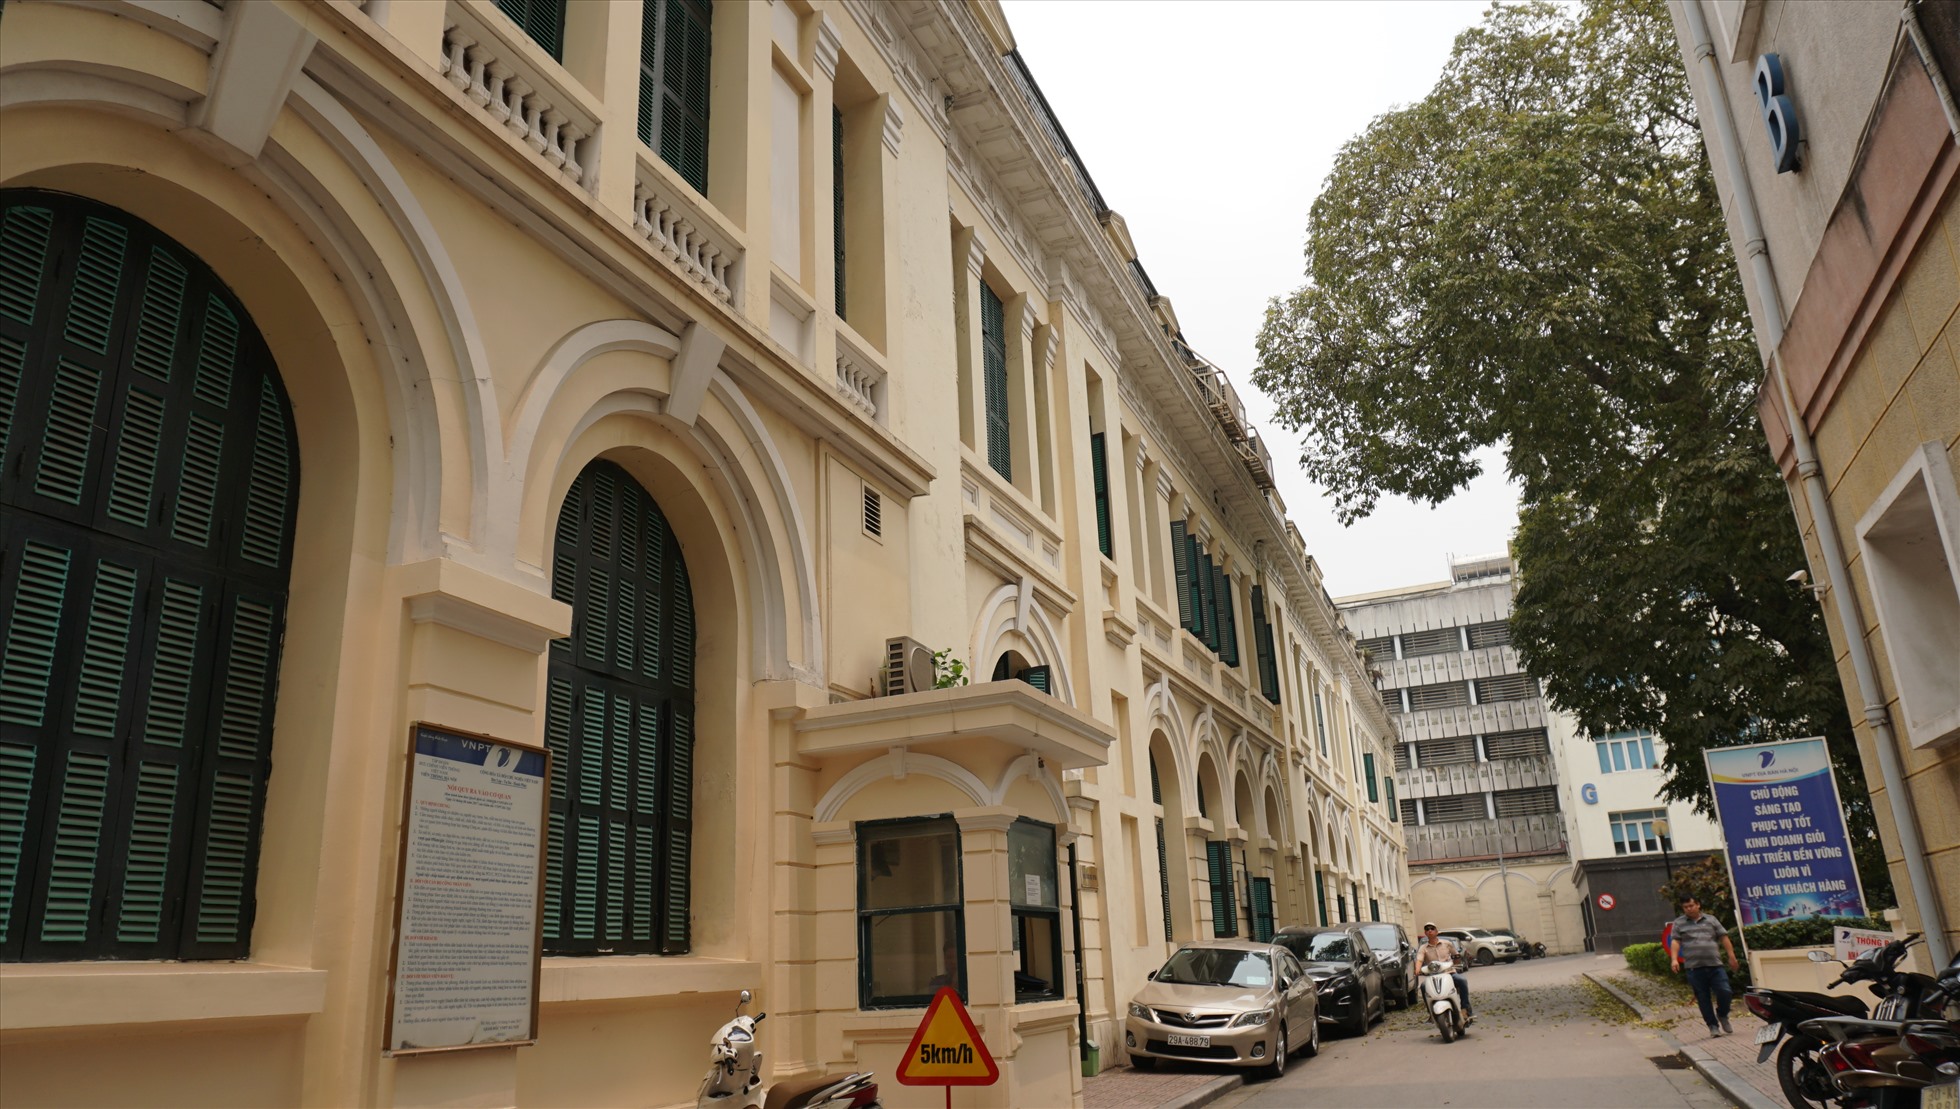 Trong hơn 100 năm lịch sử tồn tại của mình, Bưu điện Hà Nội đã trải qua nhiều biến cố lịch sử nhưng vẫn giữ được những nét kiến trúc nguyên bản.